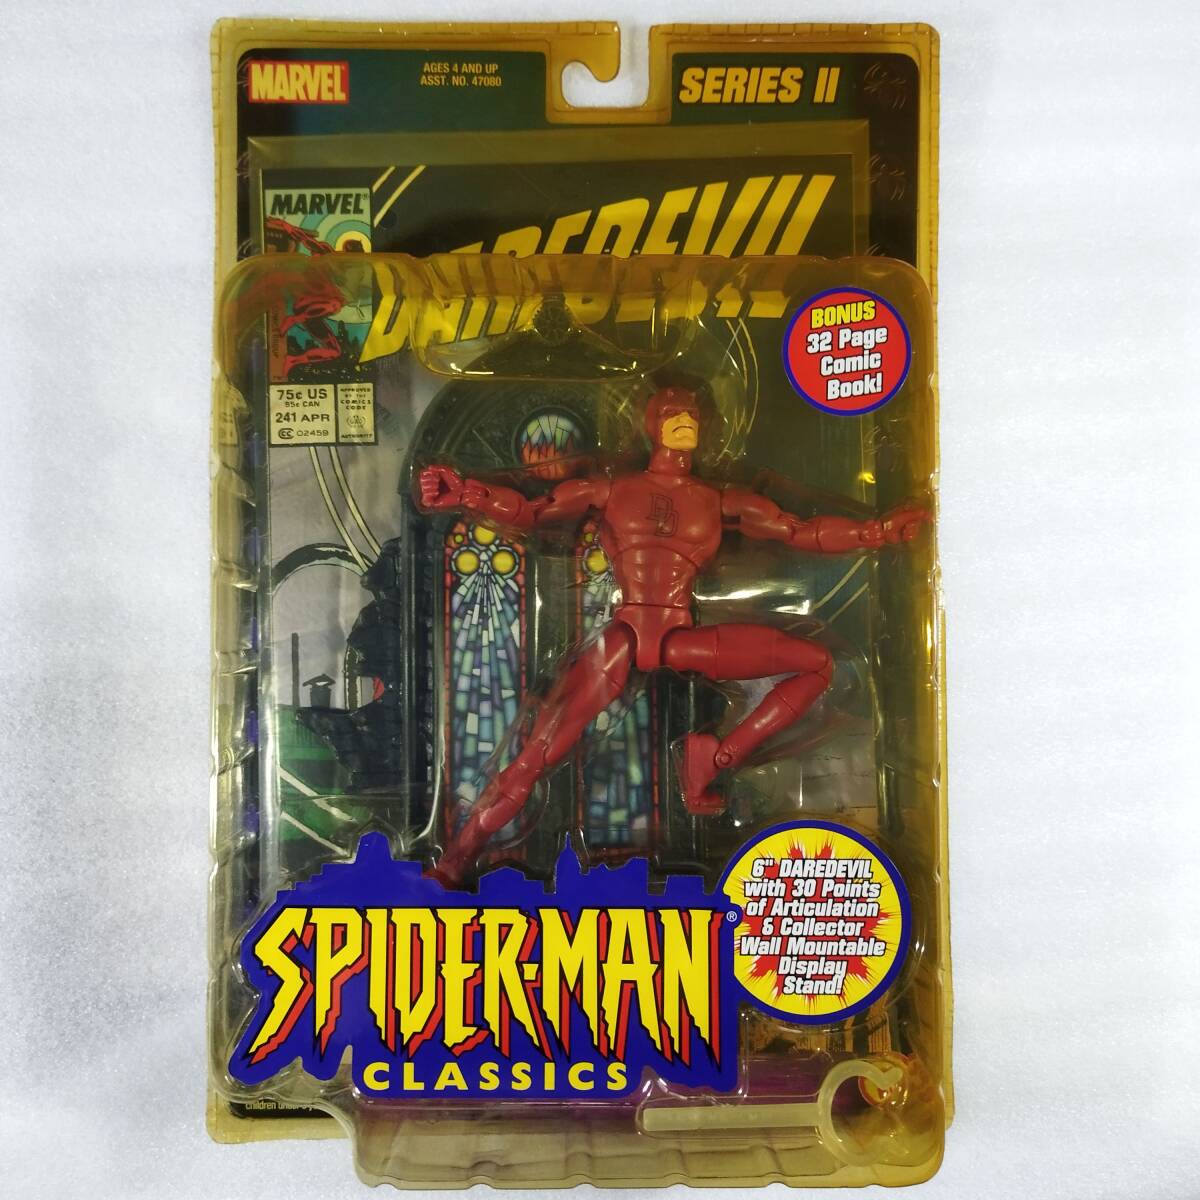  включая доставку Человек-паук * Classic [ der De Ville ] нераспечатанный товар комикс есть ассортимент 2 фигурка игрушка bizDAREDEVIL SPIDER-MAN CLASSICS